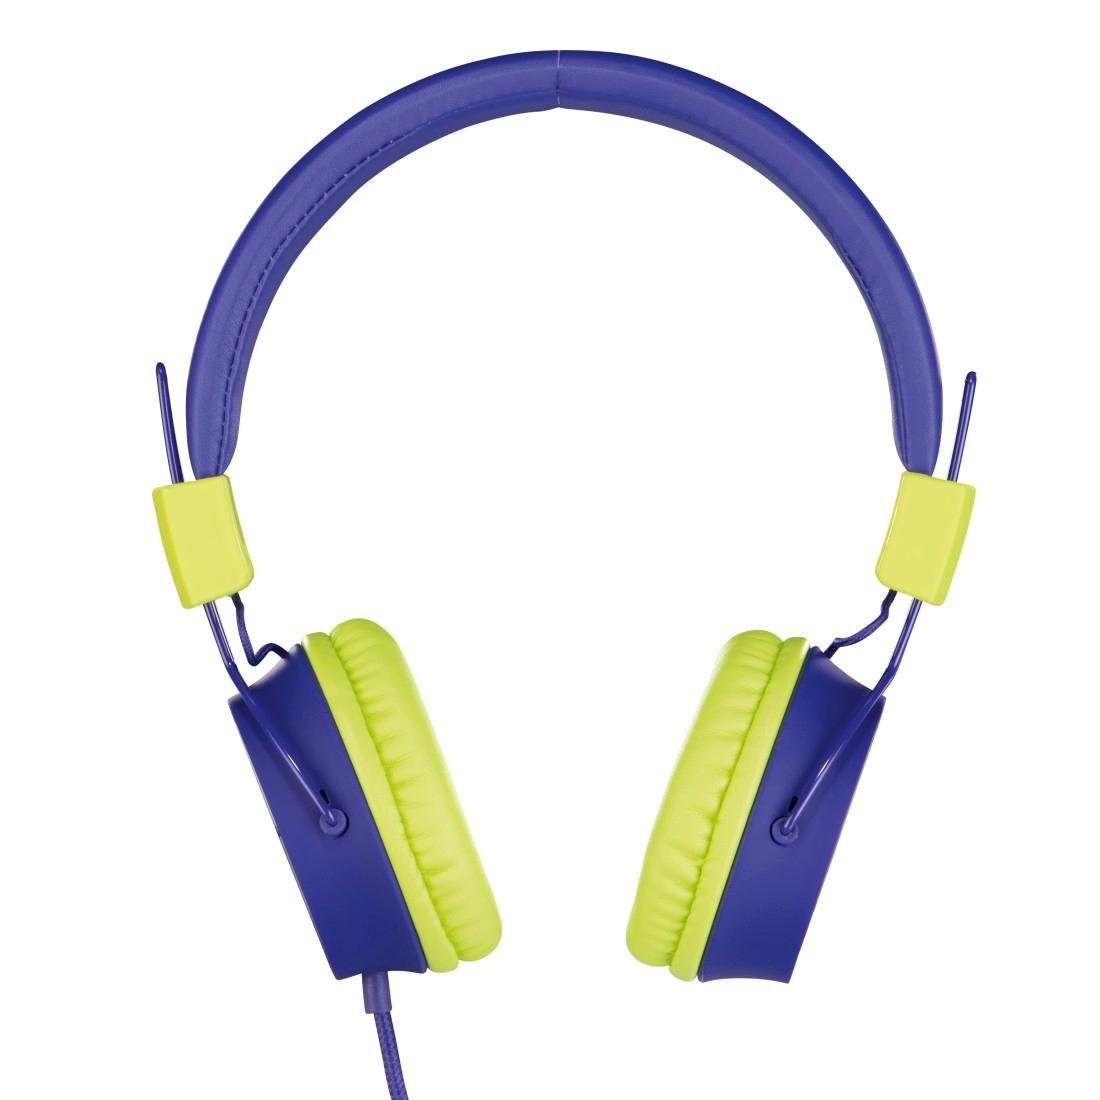 Thomson Kinderkopfhörer mit Kabel On-Ear, Lautstärkebegrenzung auf 85dB leicht On-Ear-Kopfhörer (größenverstellbar zusammenfaltbar, weiterer Kopfhöreranschluss möglich) blau